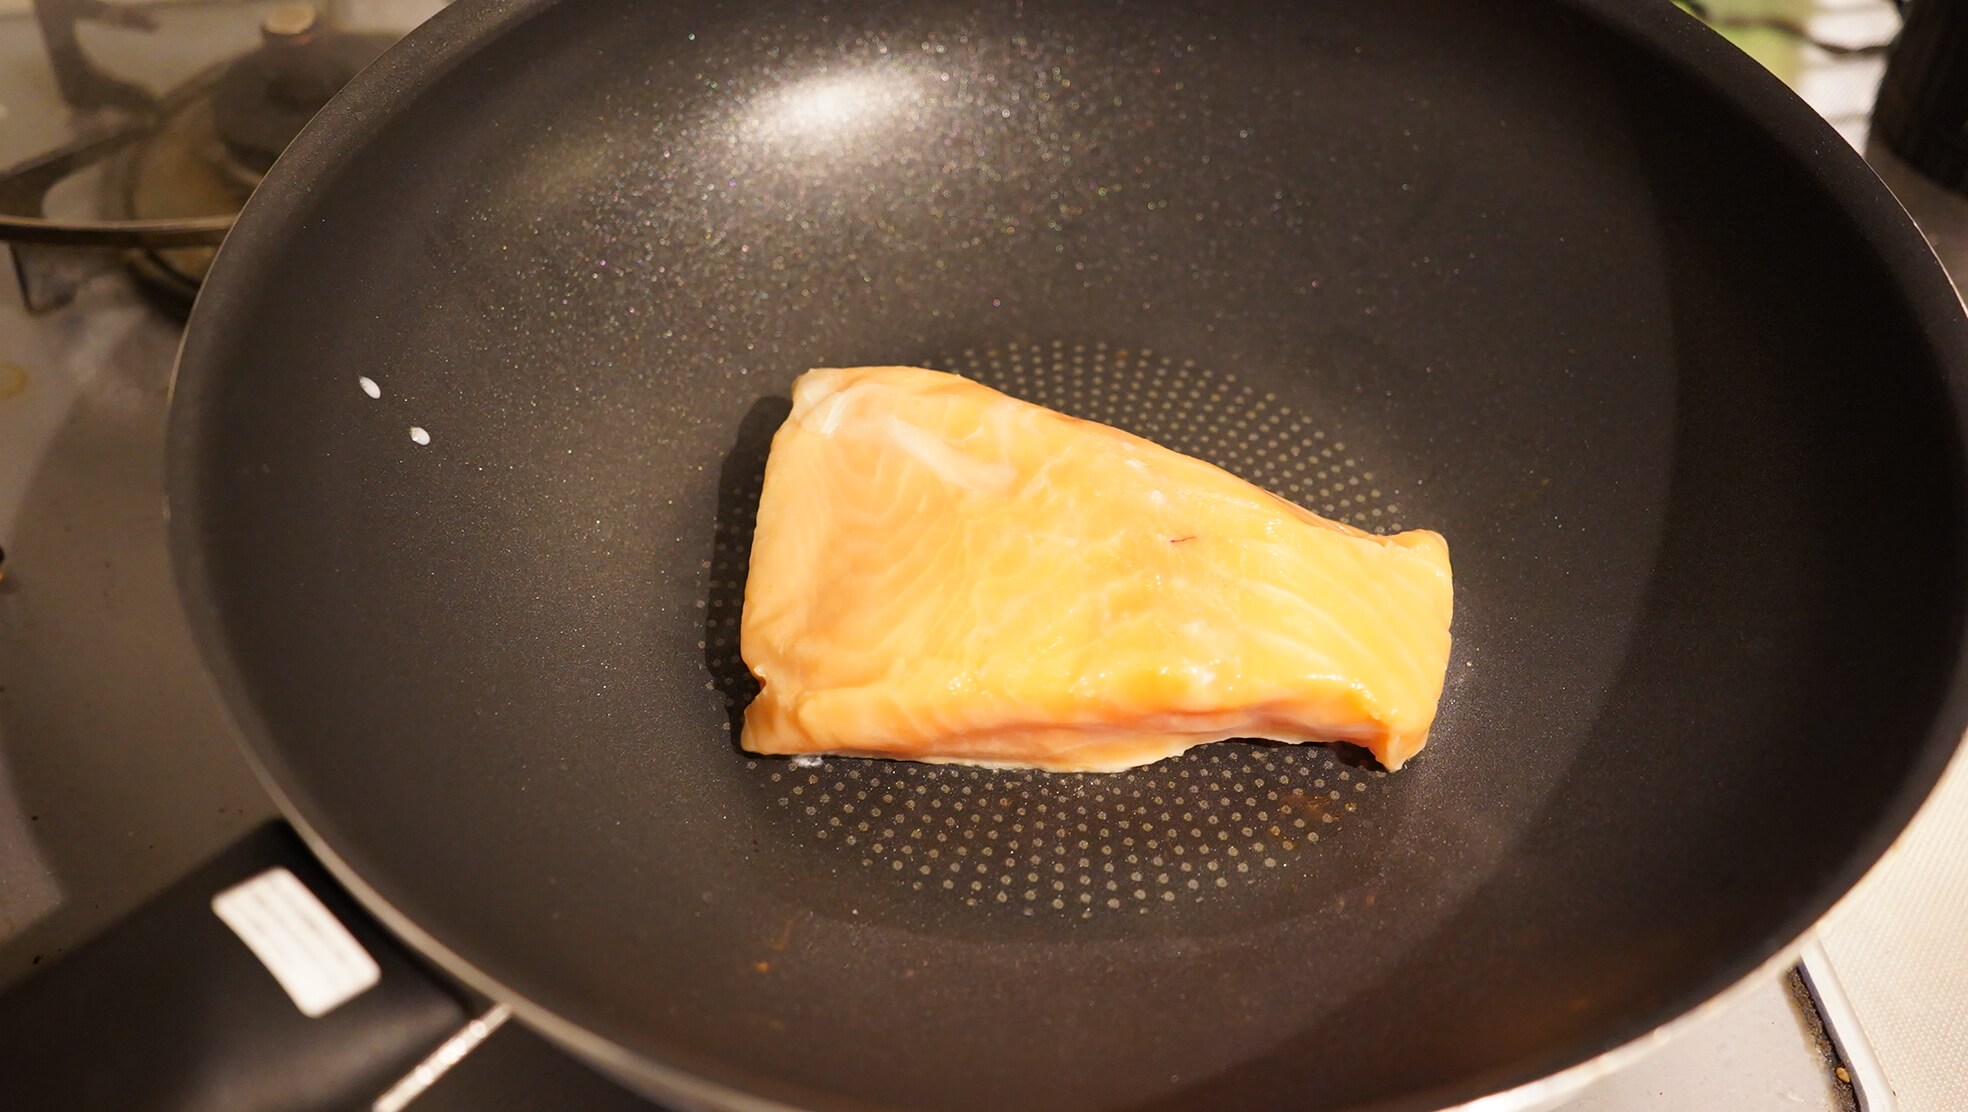 コストコの冷凍食品「アトランティック・サーモン」をフライパンで焼いている写真